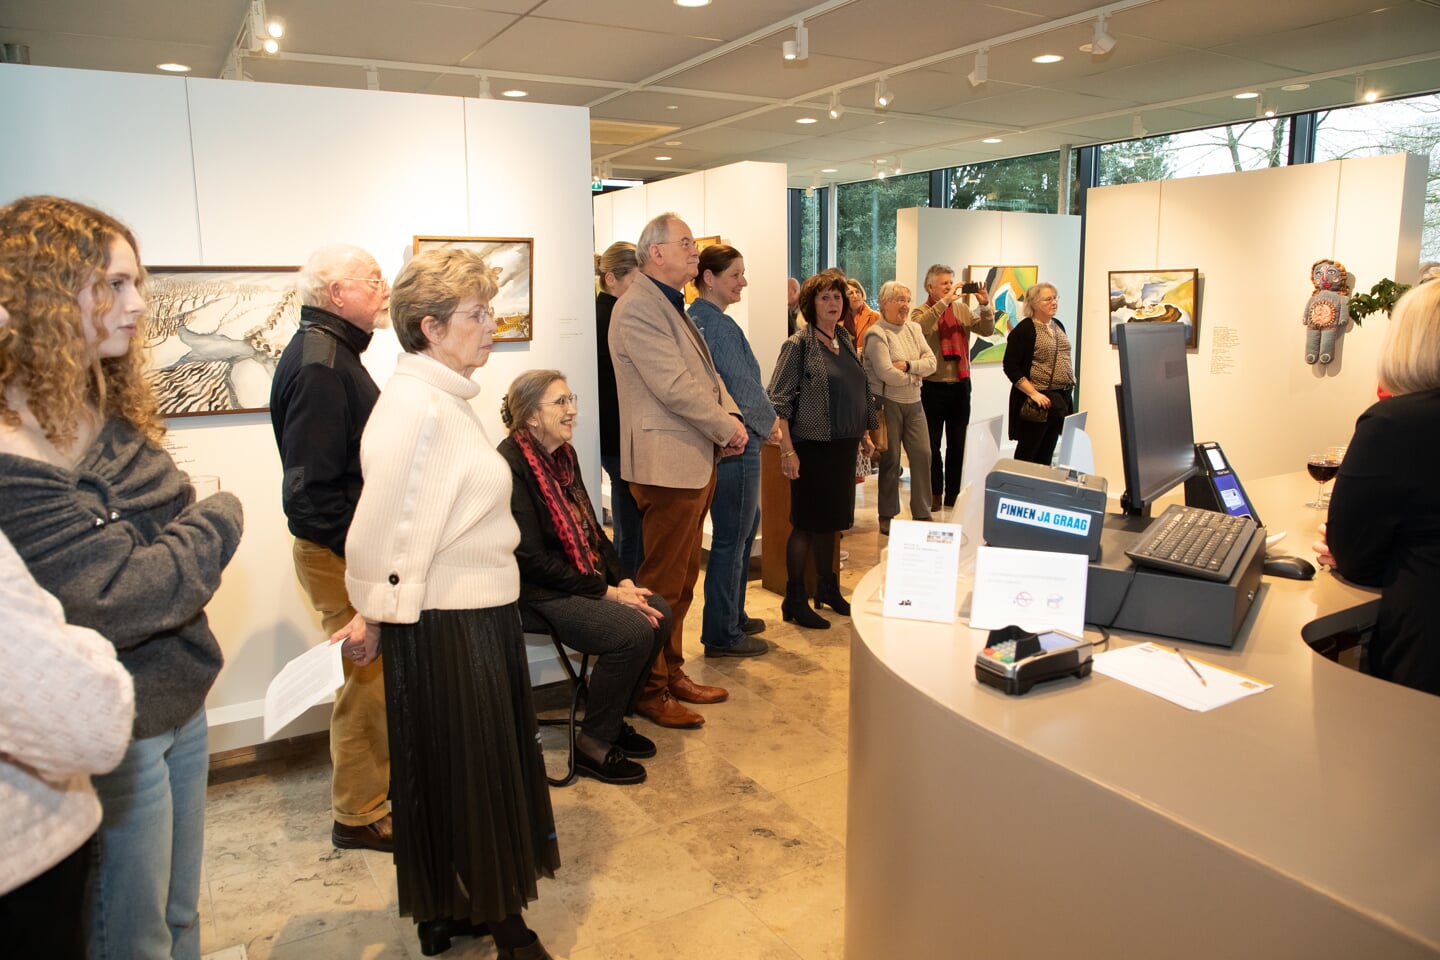 Els Coppens en Joep Coppens exposeren in museum Jan Heestershuis